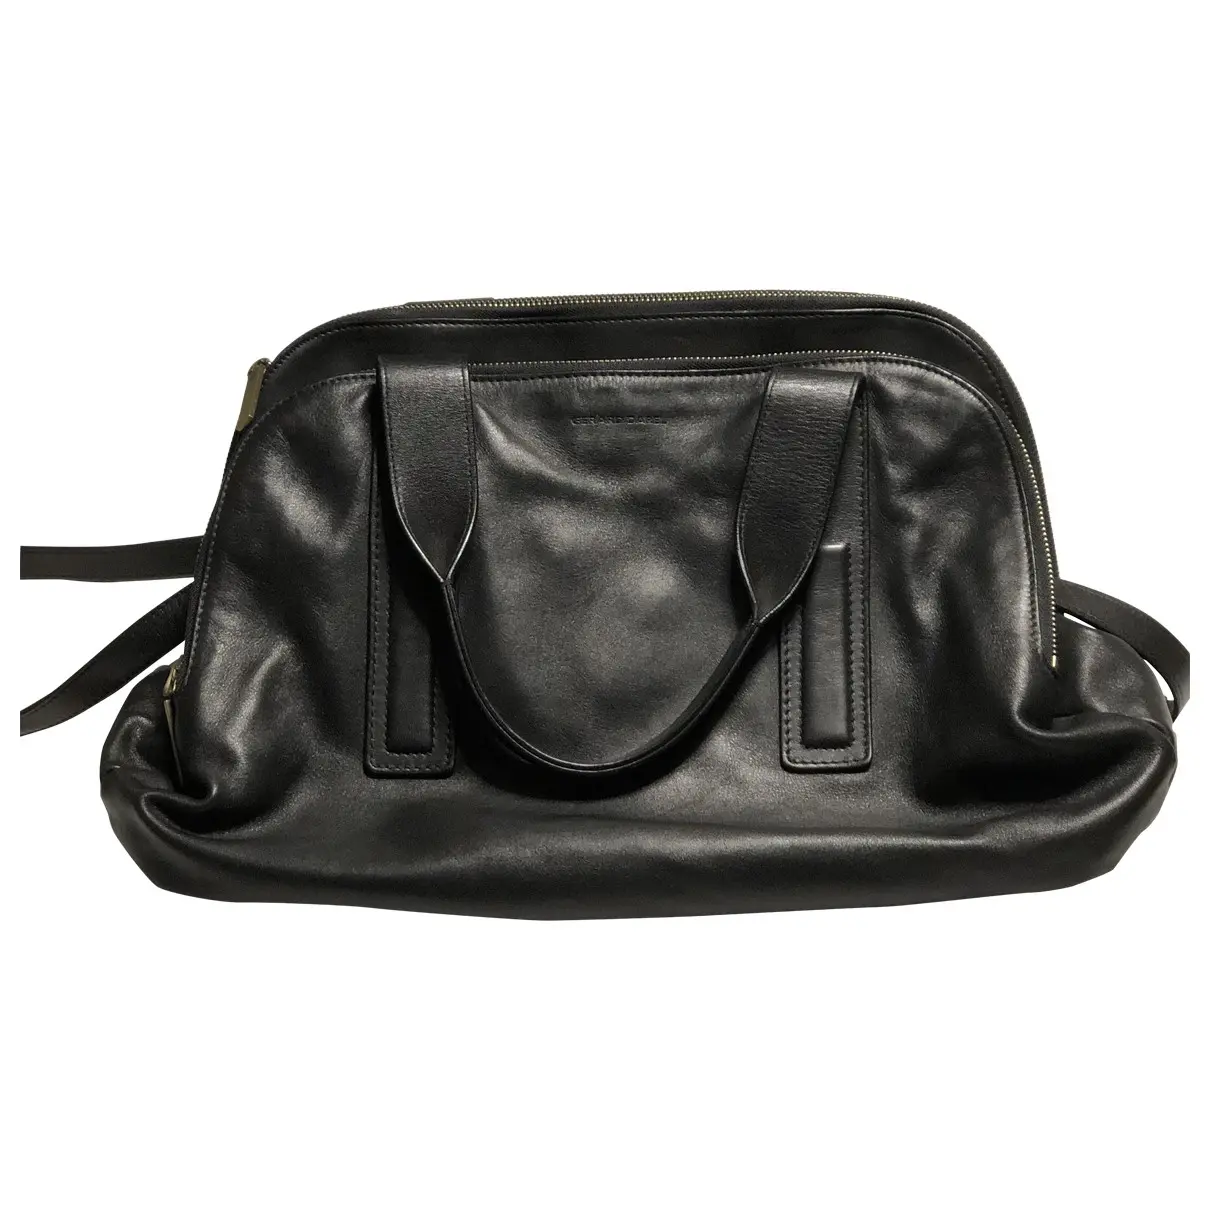 Leather handbag Gerard Darel